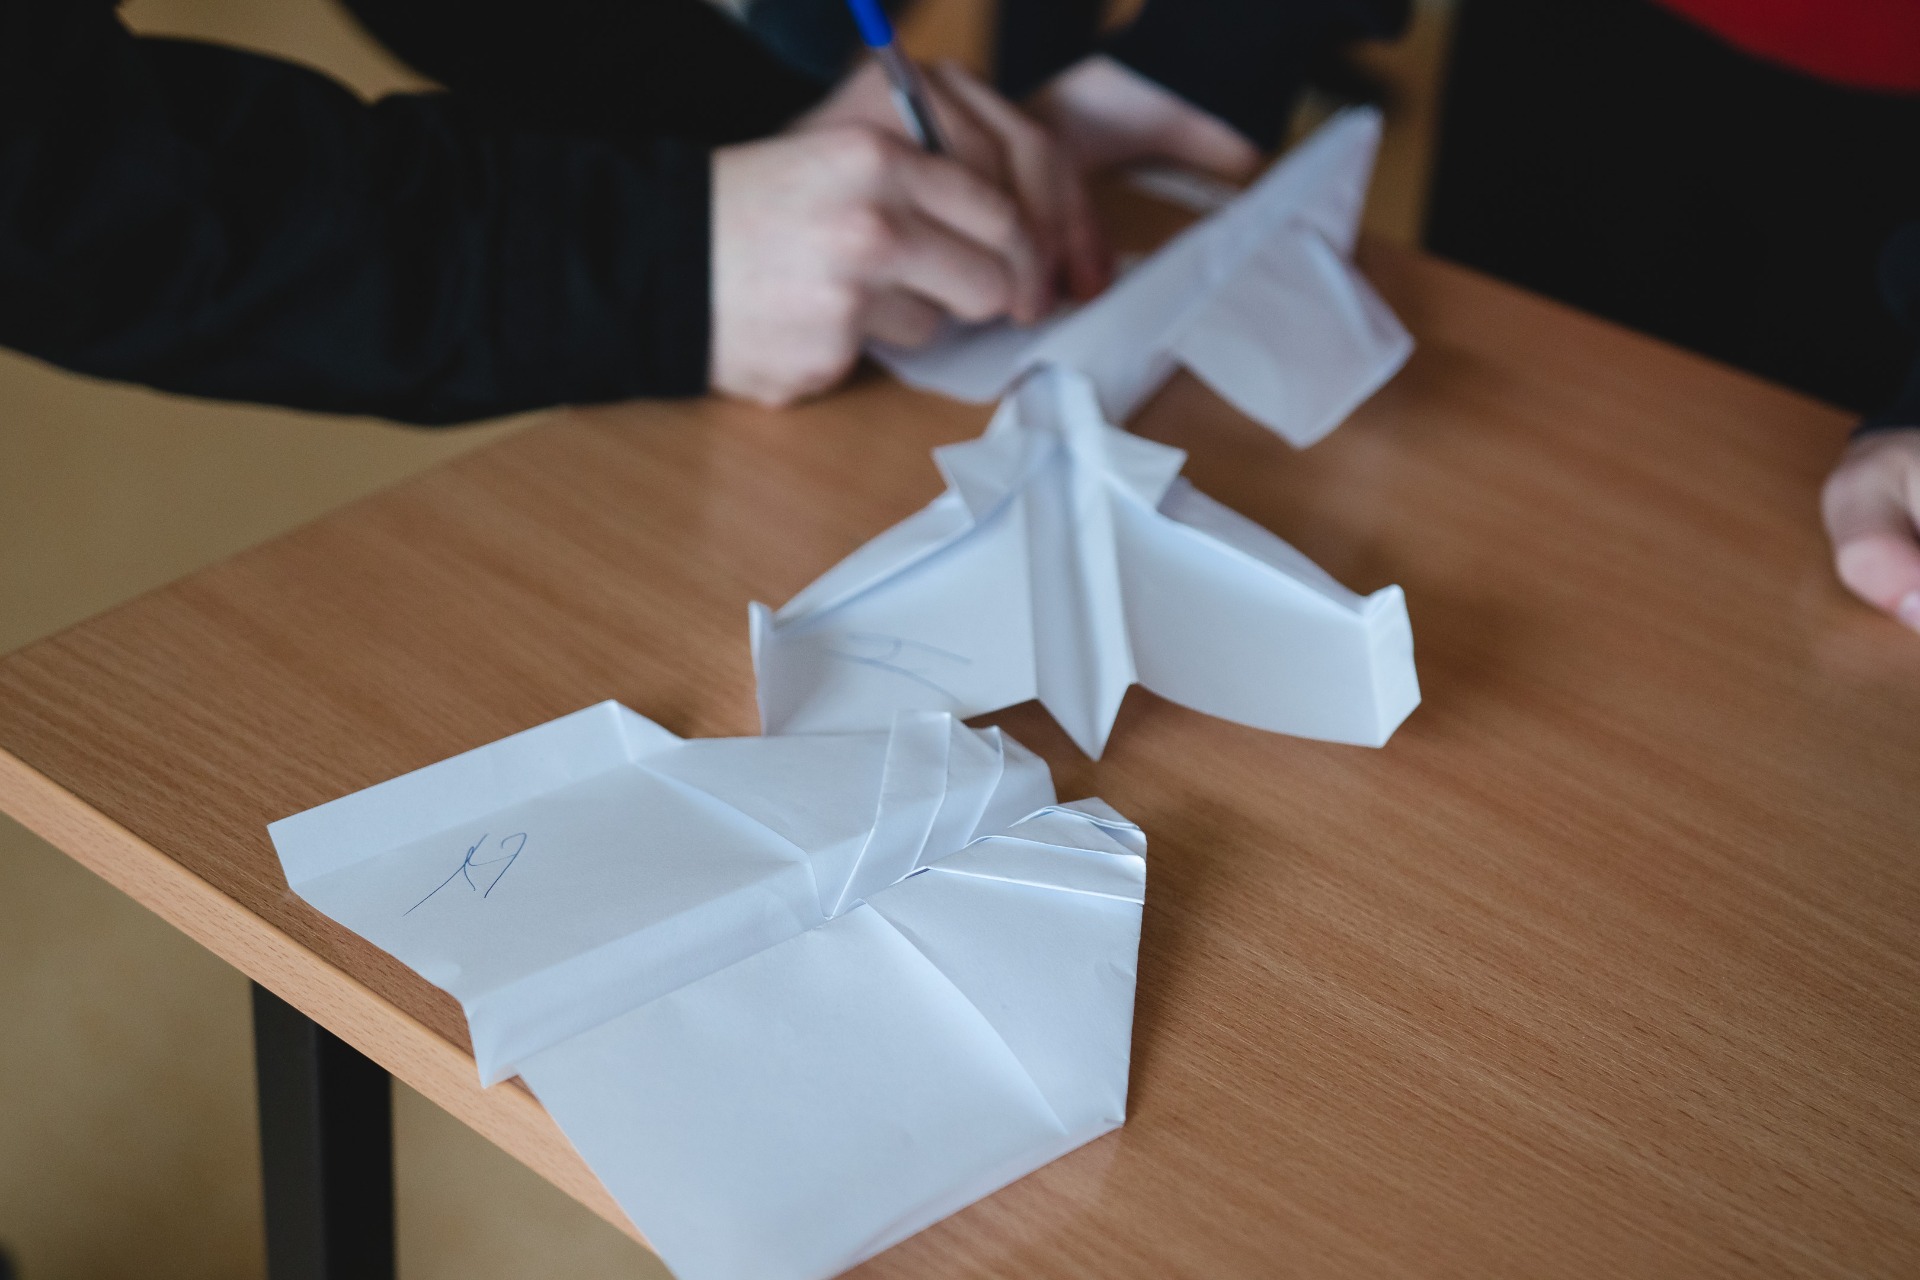 
Samoloty z papieru.